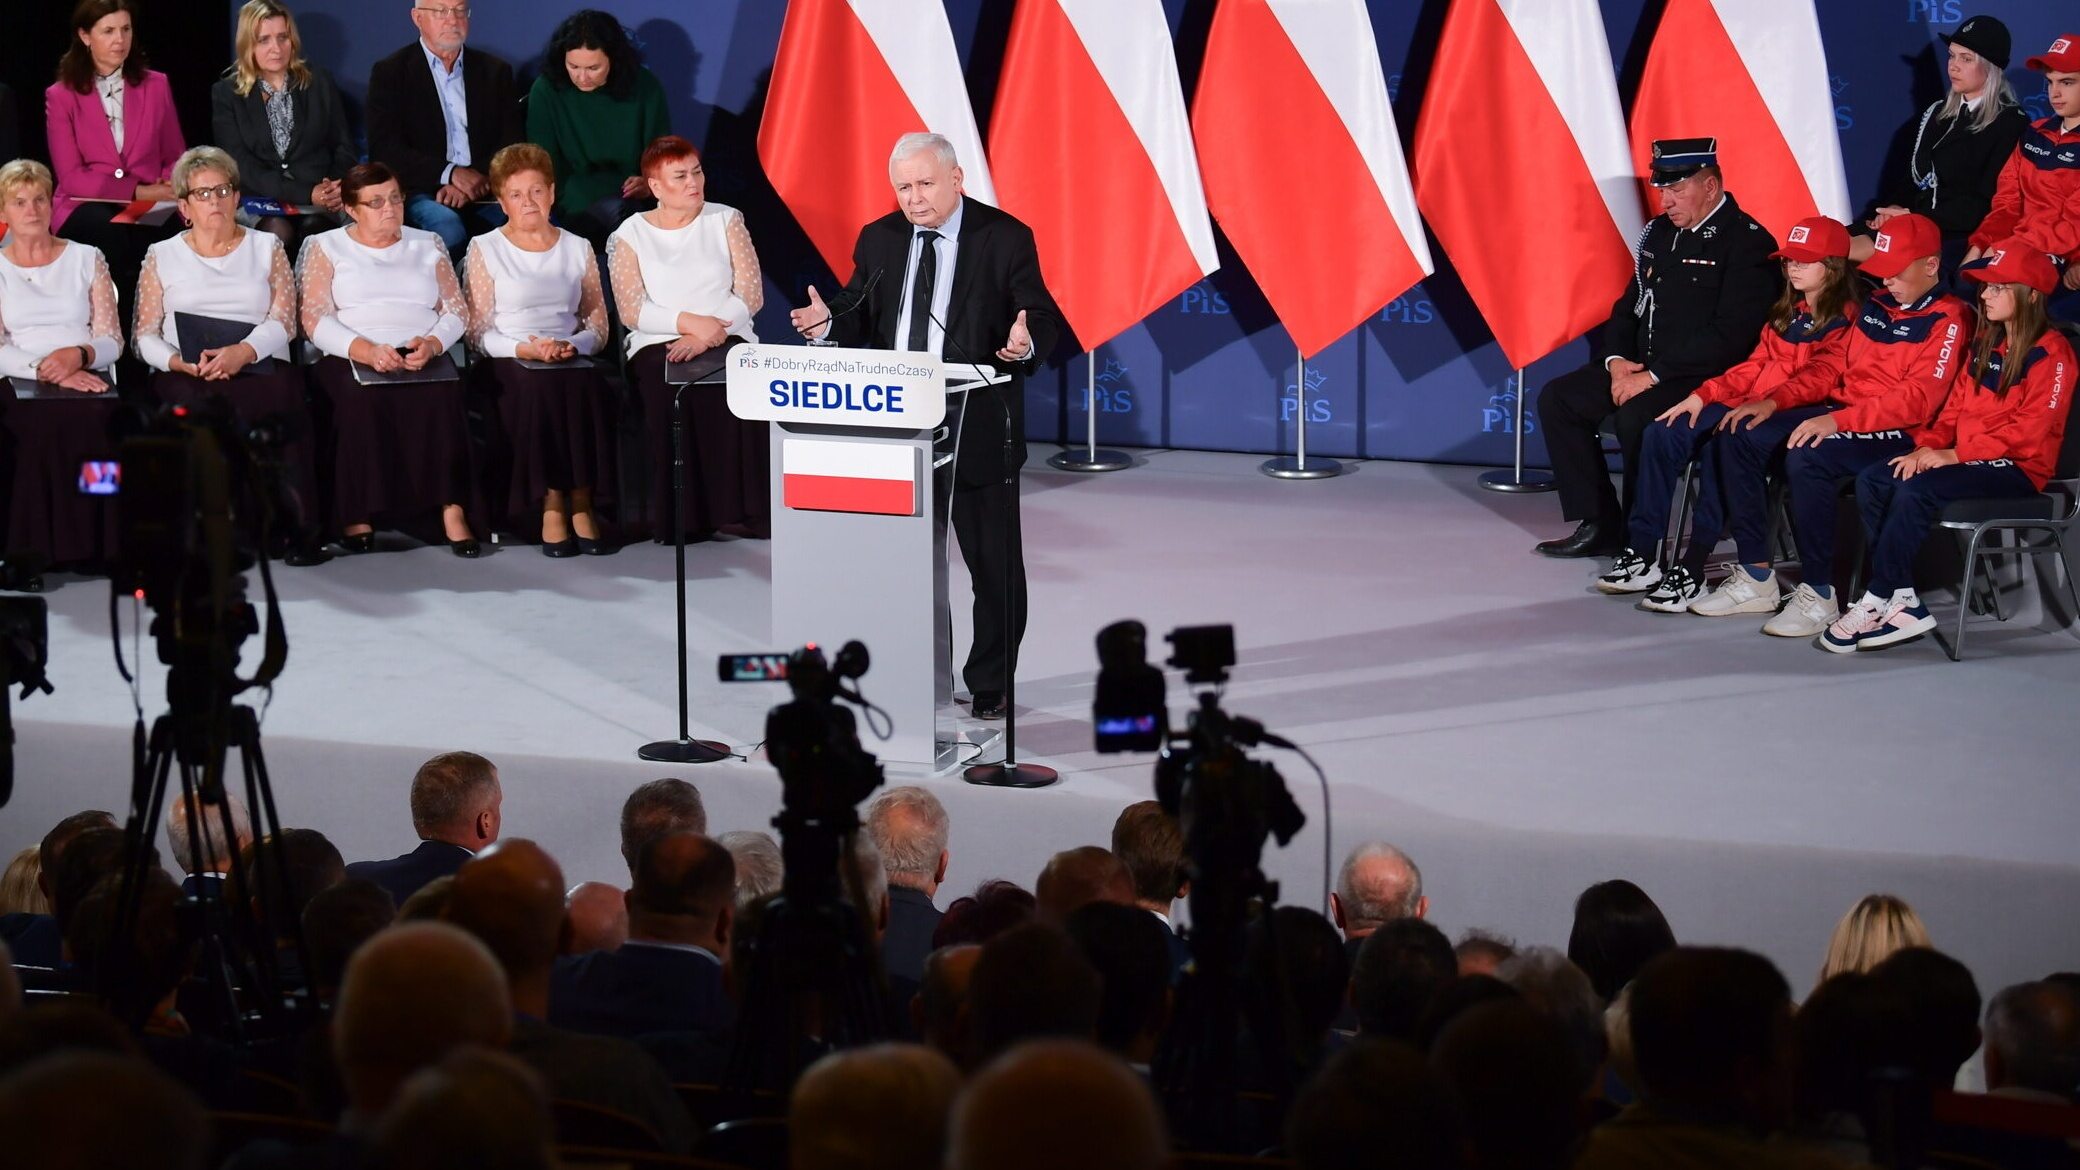 Kaczyński à Siedlce sur les élections, Tusk et la démocratie